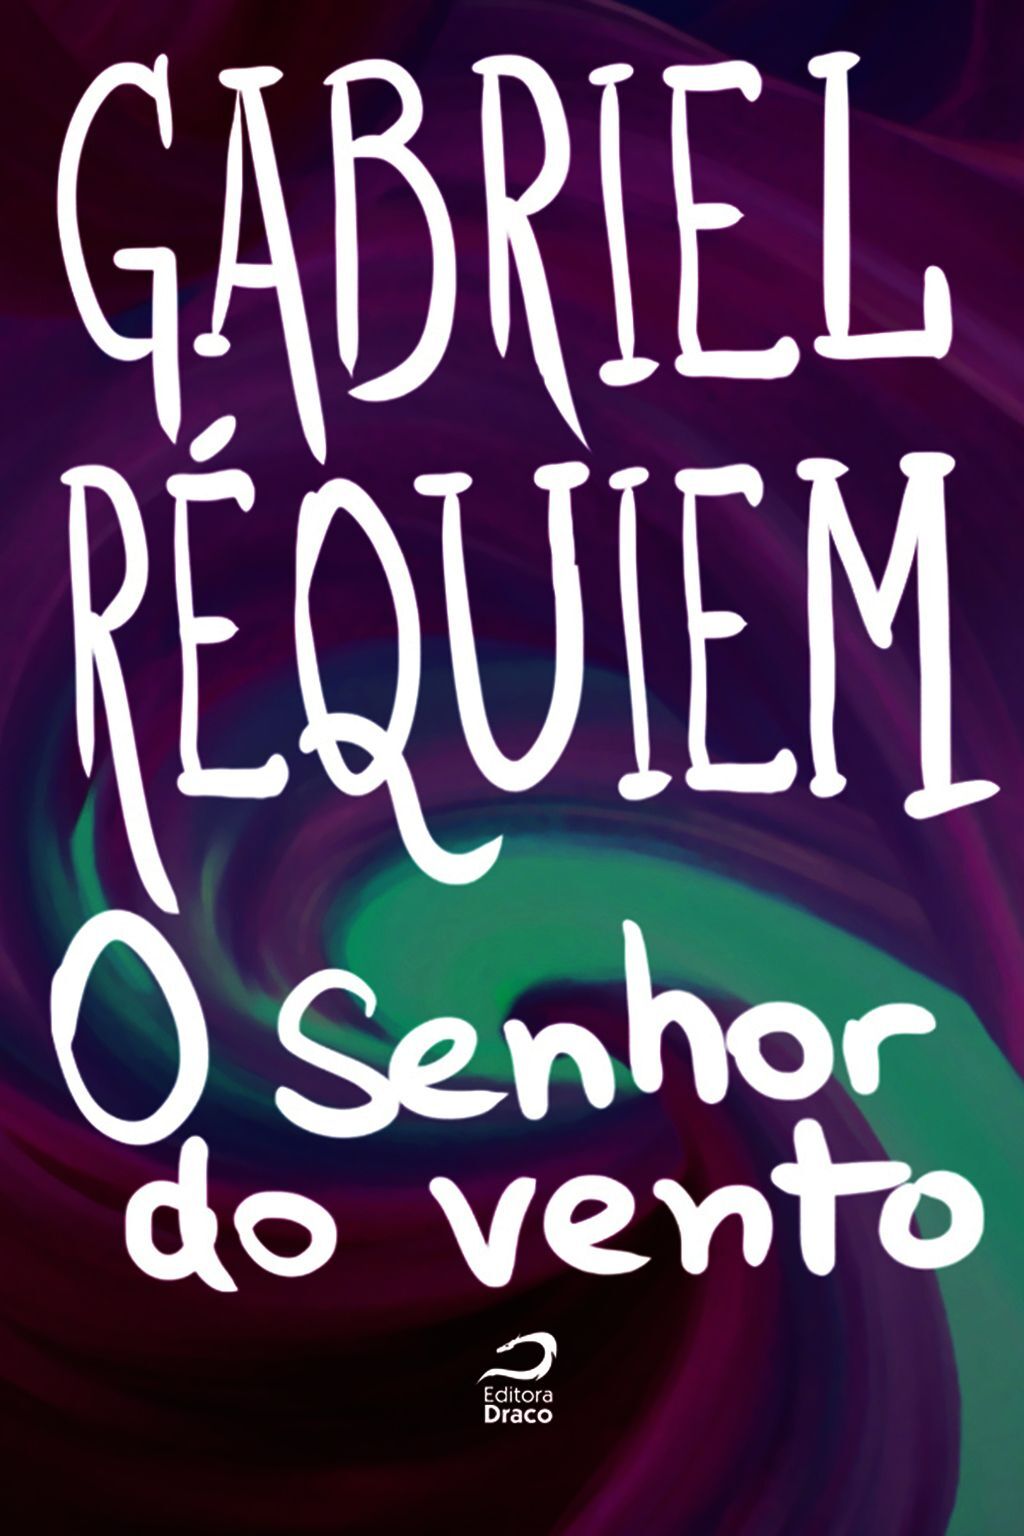 O senhor do vento, Gabriel Réquiem (e-book) - Editora Draco